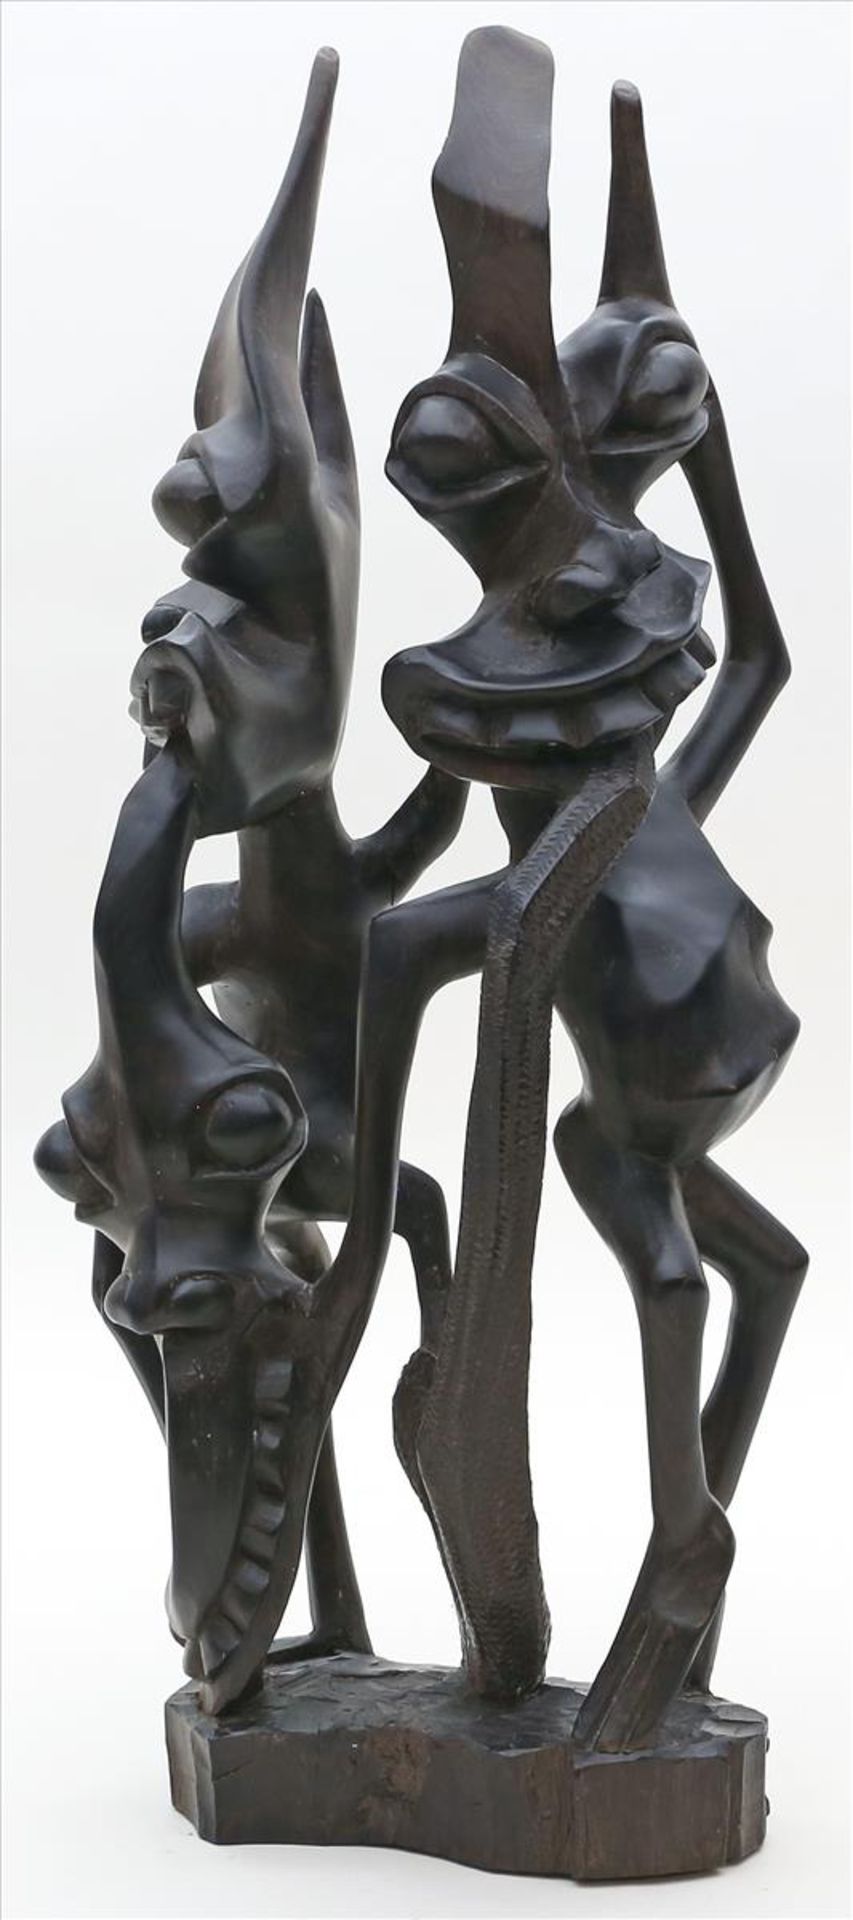 Skulpturengruppe "Tanzende Fabelwesen".Hartholz, durchbrochen geschnitzt. Afrika. H. 49 cm.